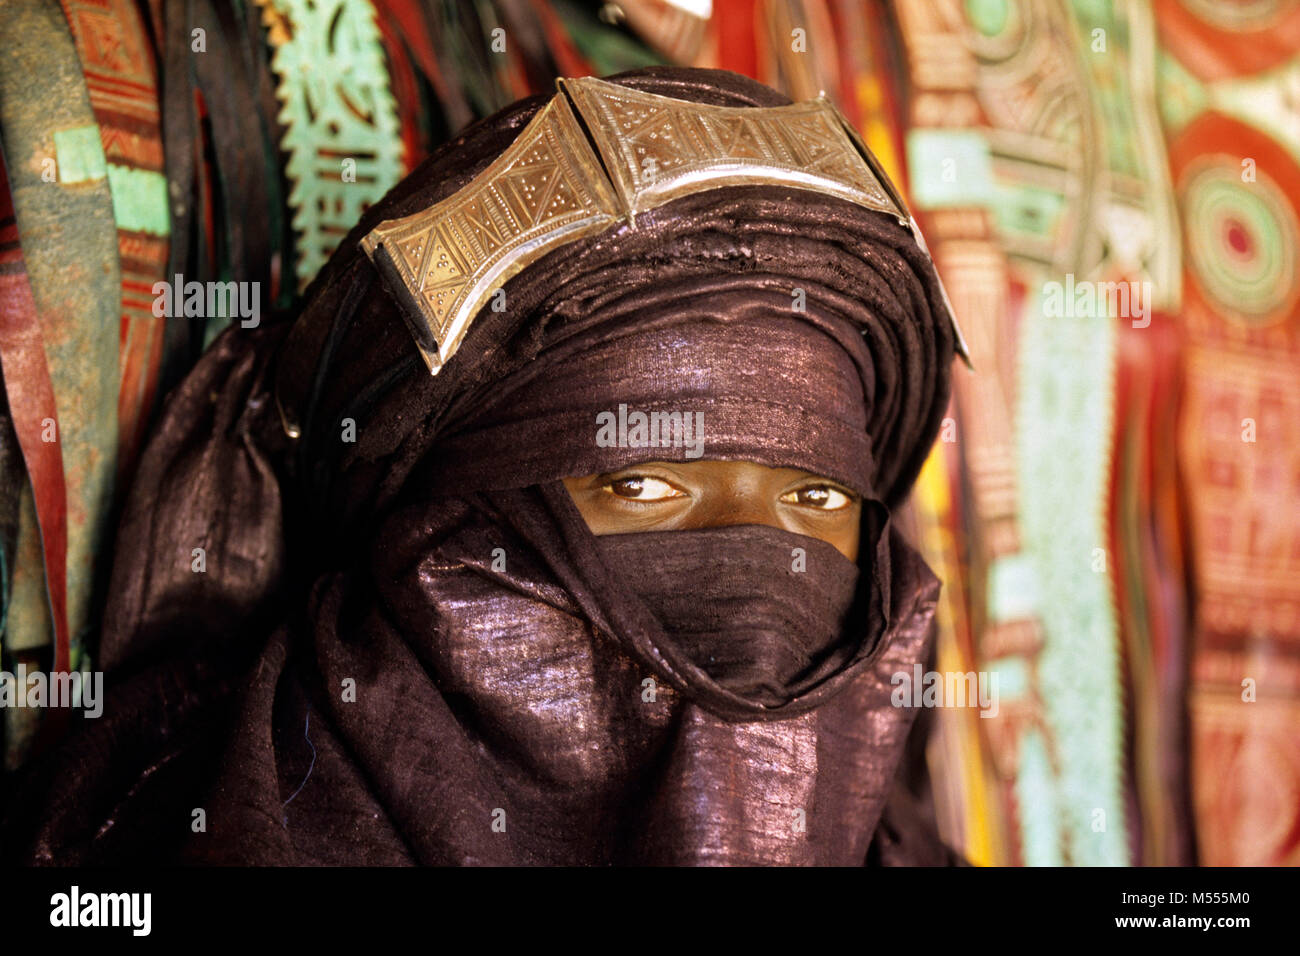 L'Algérie. Tamanrasset. Désert du Sahara. Portrait de l'homme de tribu touareg au cours de l'springfestival TAFSIT ou. Turban bleu indigo. Banque D'Images